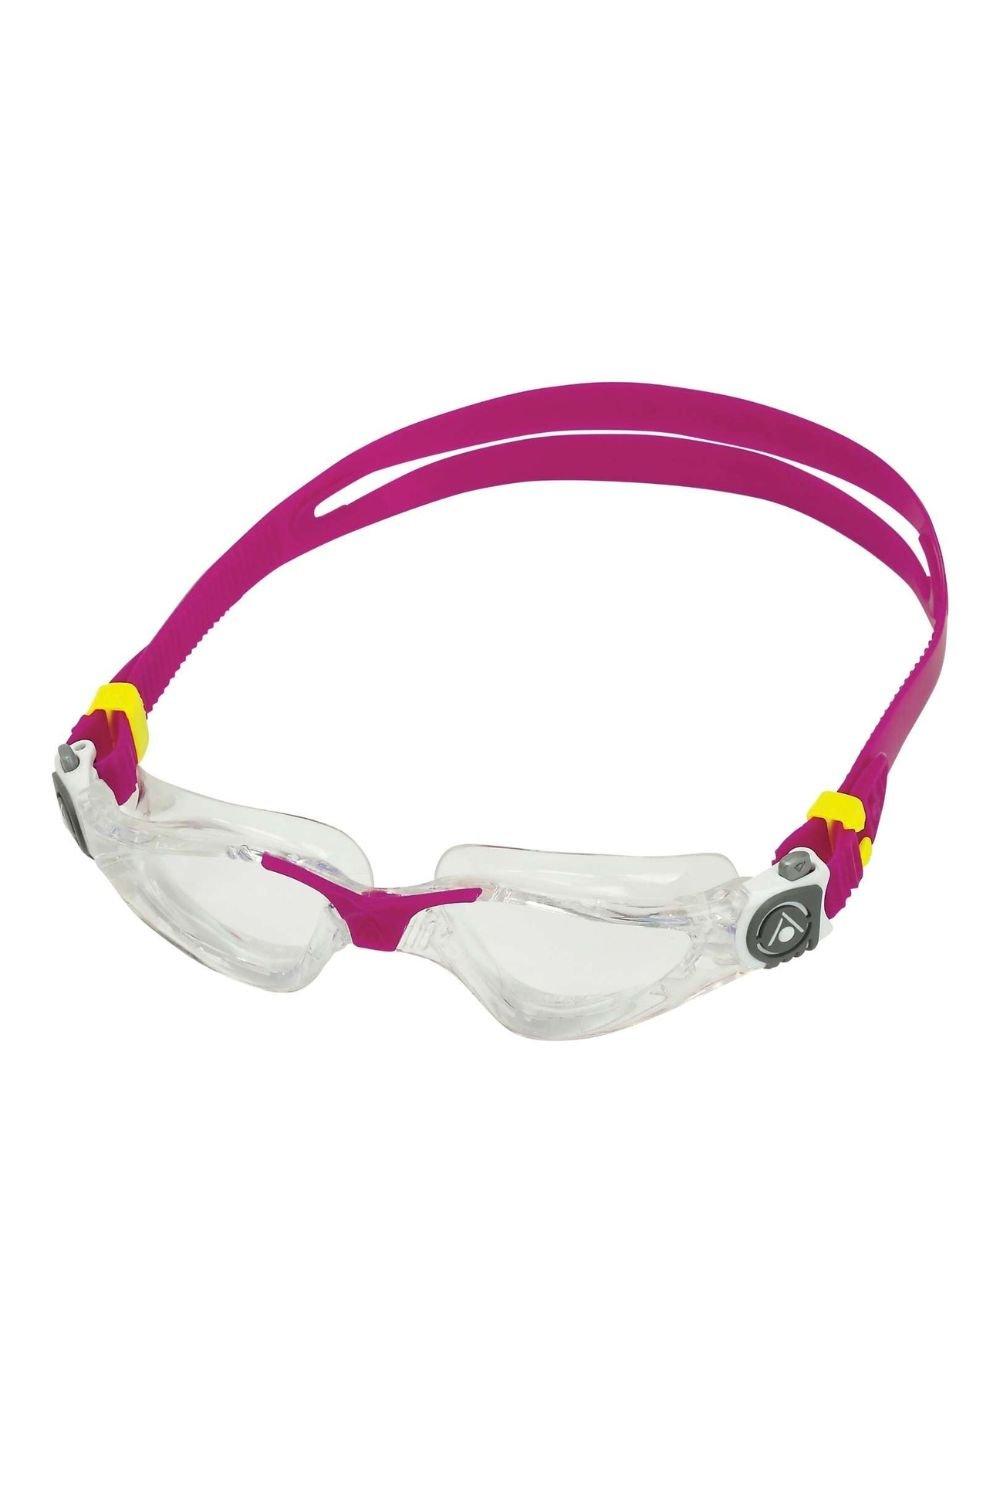 Женские очки для плавания Kayenne Aquasphere, розовый профессиональные очки для плавания ming незапотевающие спортивные очки для взрослых водные водонепроницаемые очки для плавания